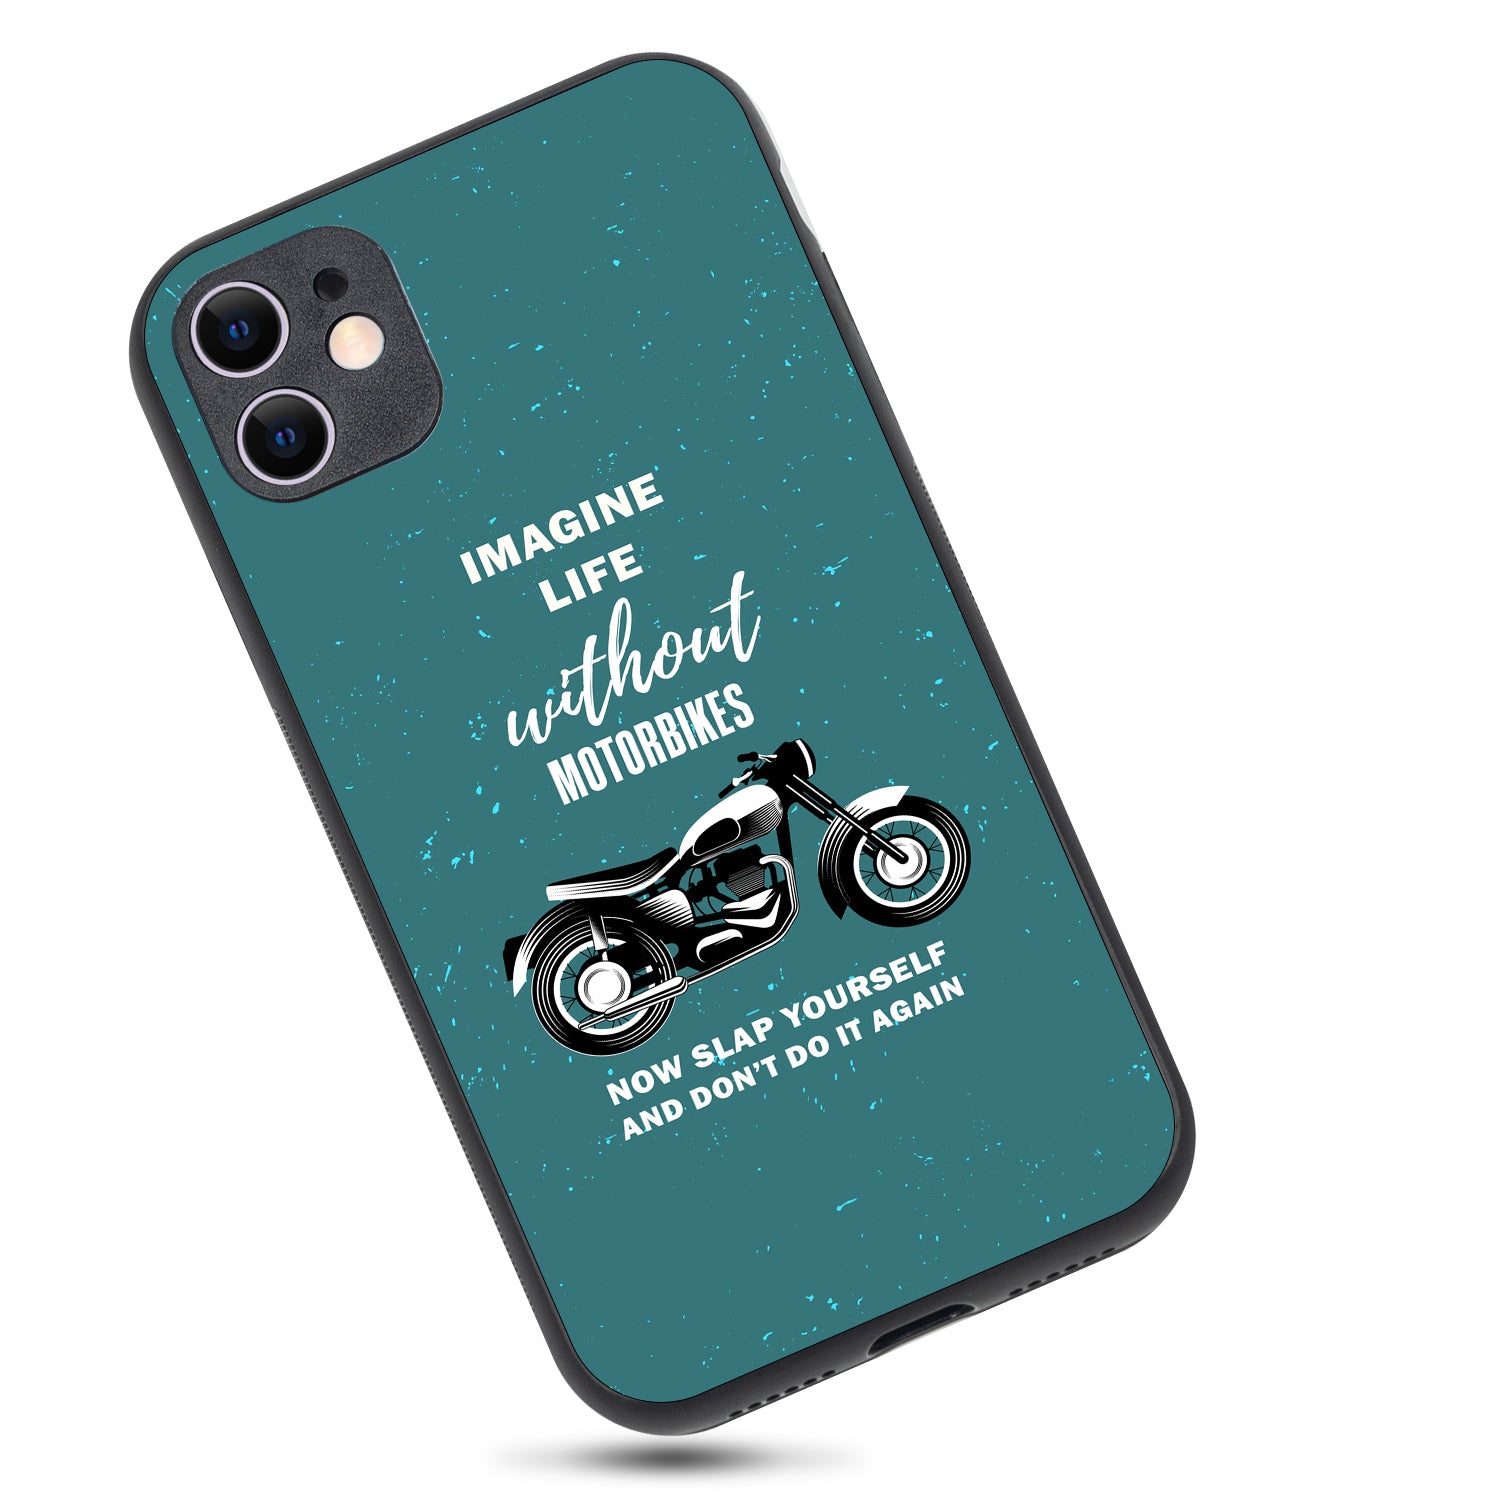 Imagine Life Without MotorbikeBike iPhone 11 Case